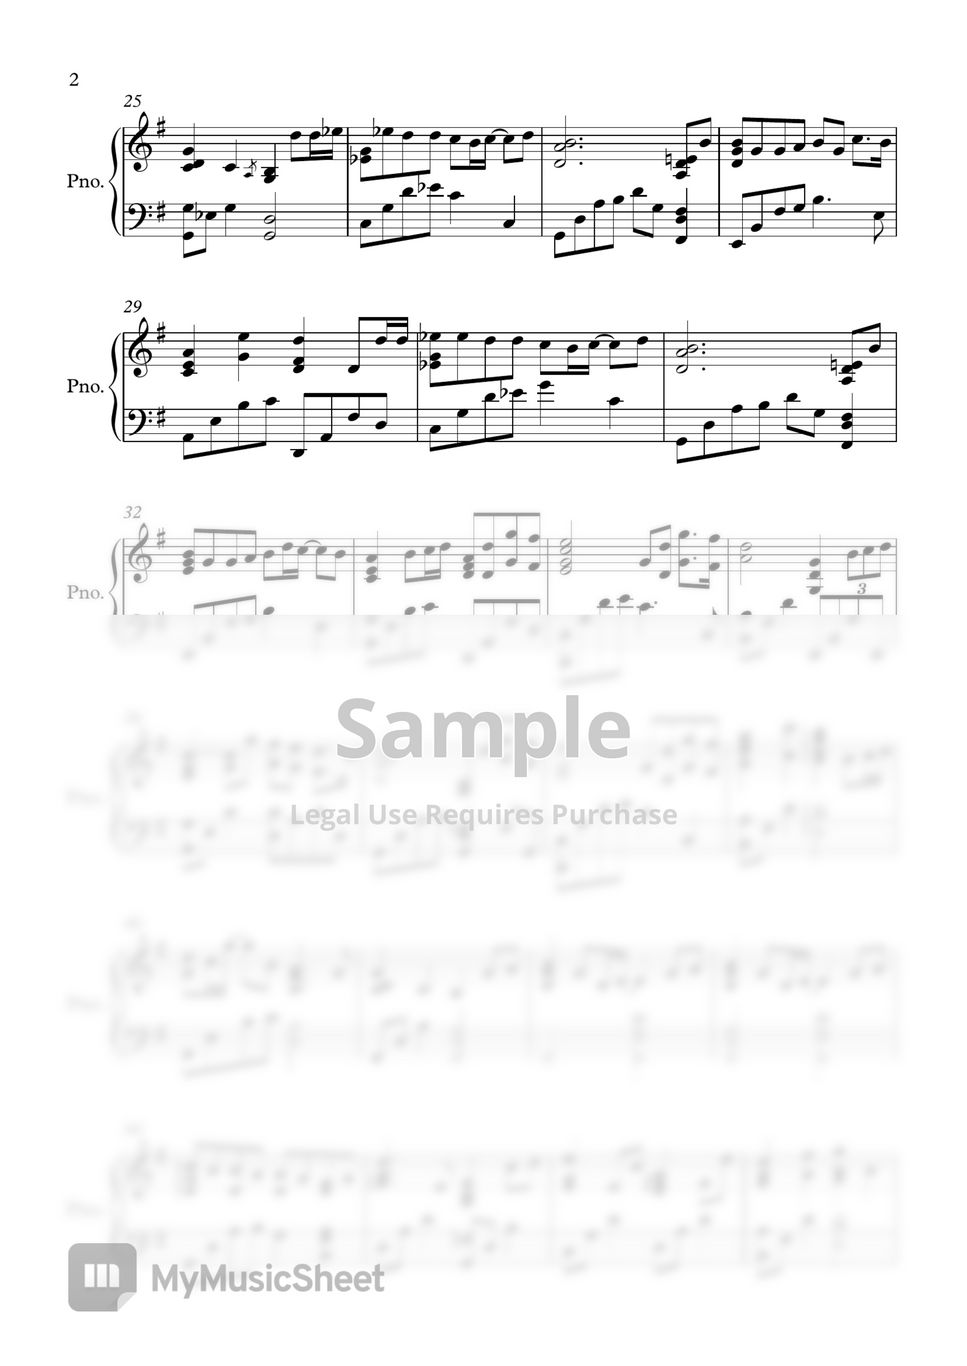 The Classic - Magic Castle (Piano Cover) by Minor Sensibility